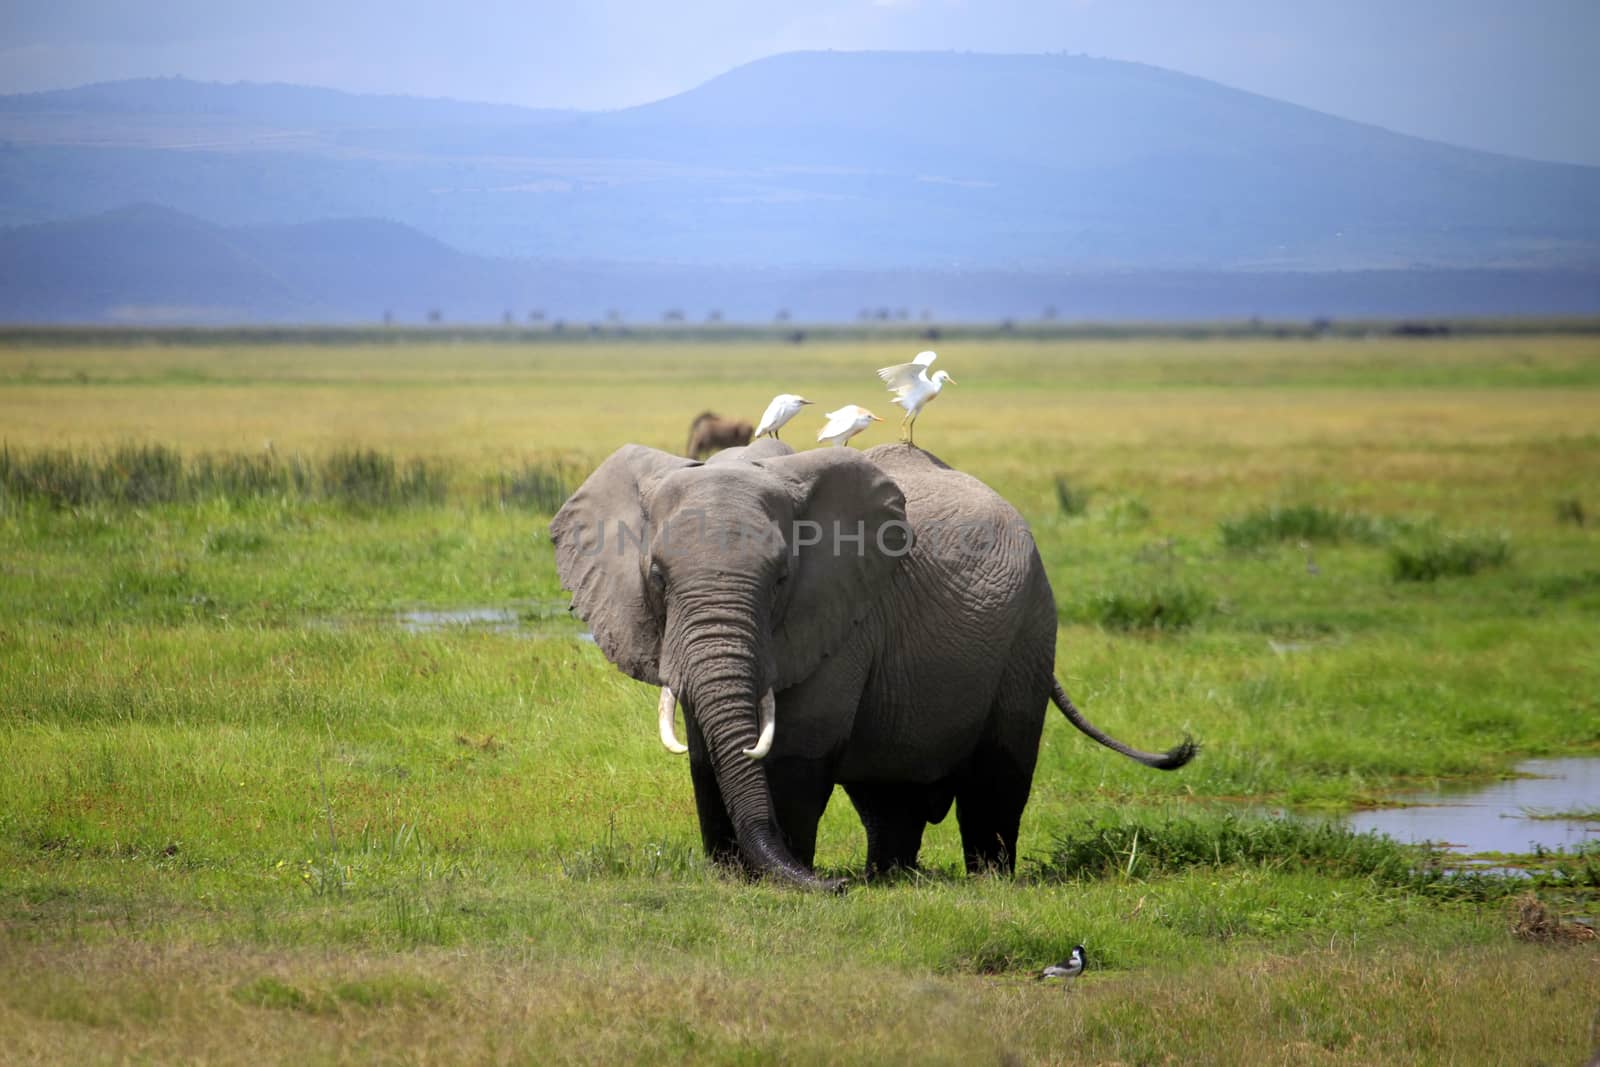 Elephants in Amboseli national park in Kenia